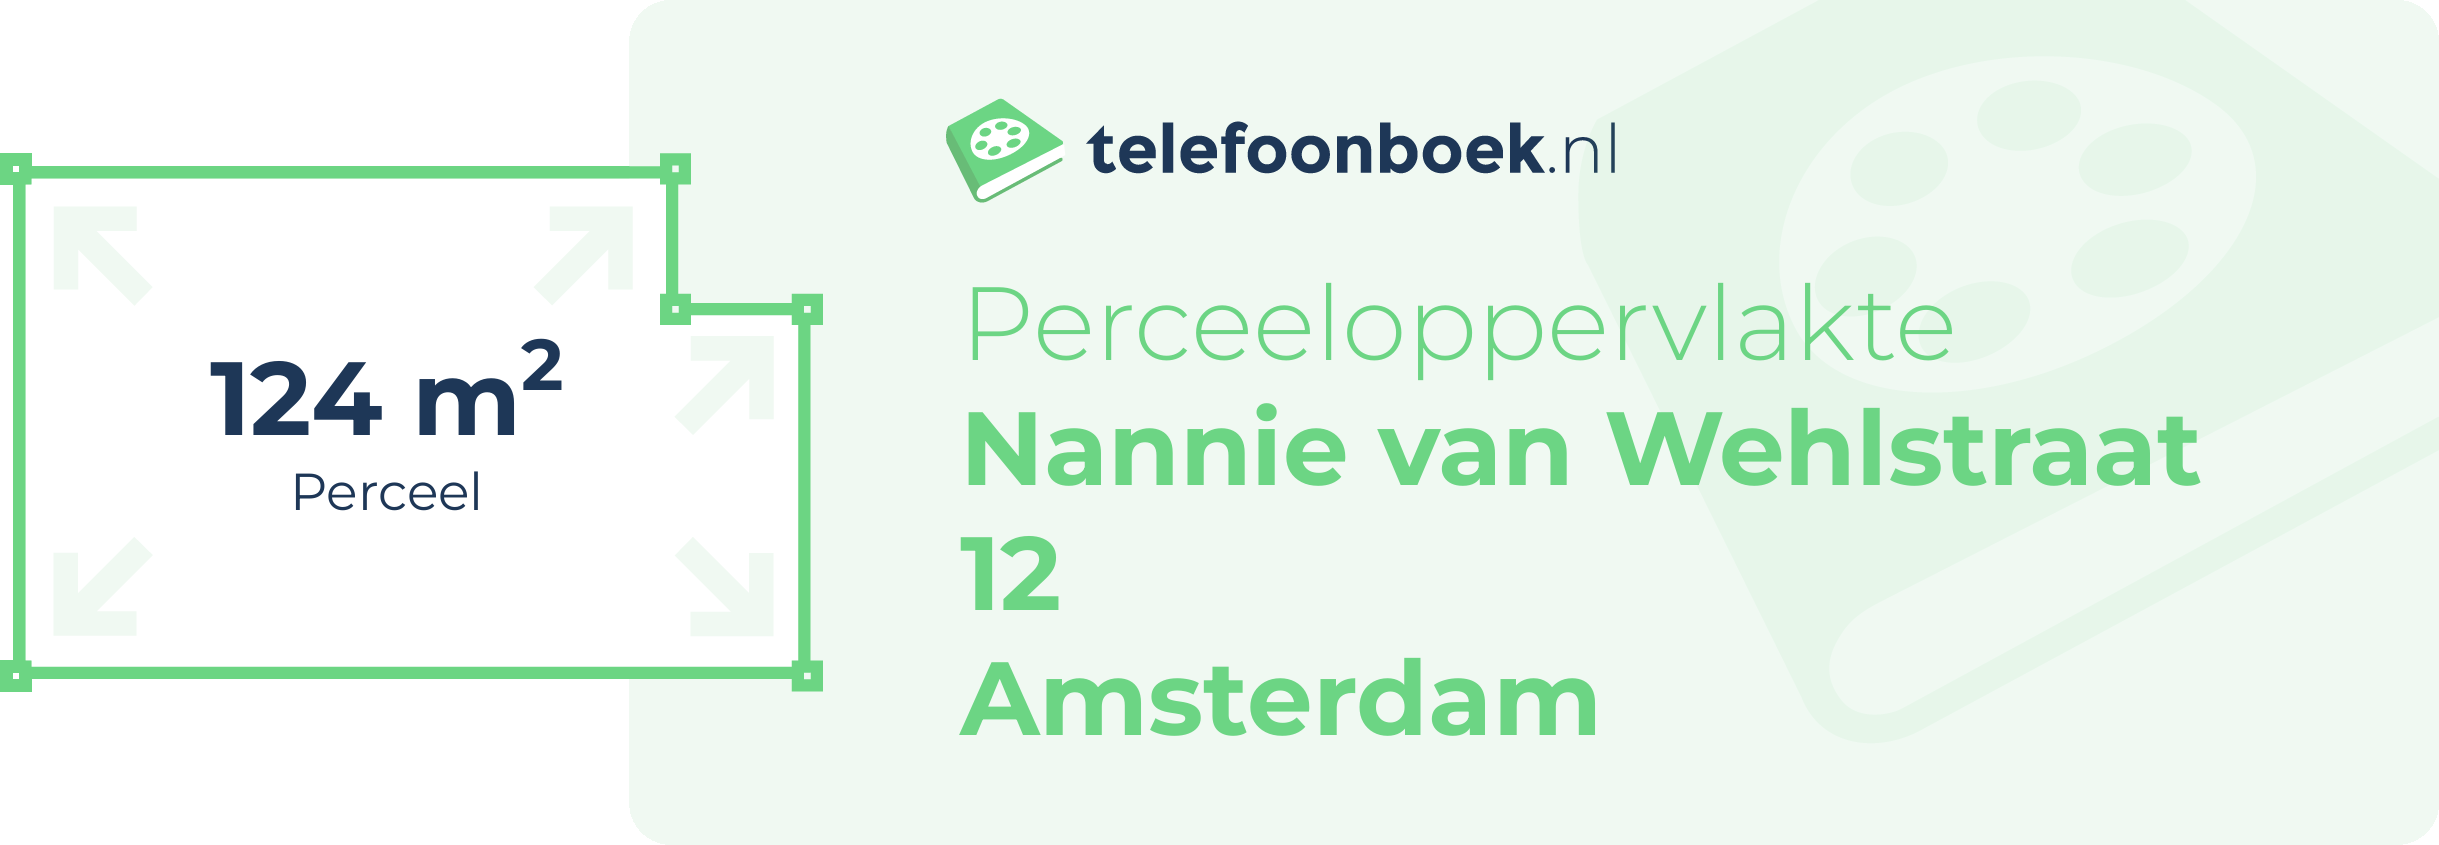 Perceeloppervlakte Nannie Van Wehlstraat 12 Amsterdam